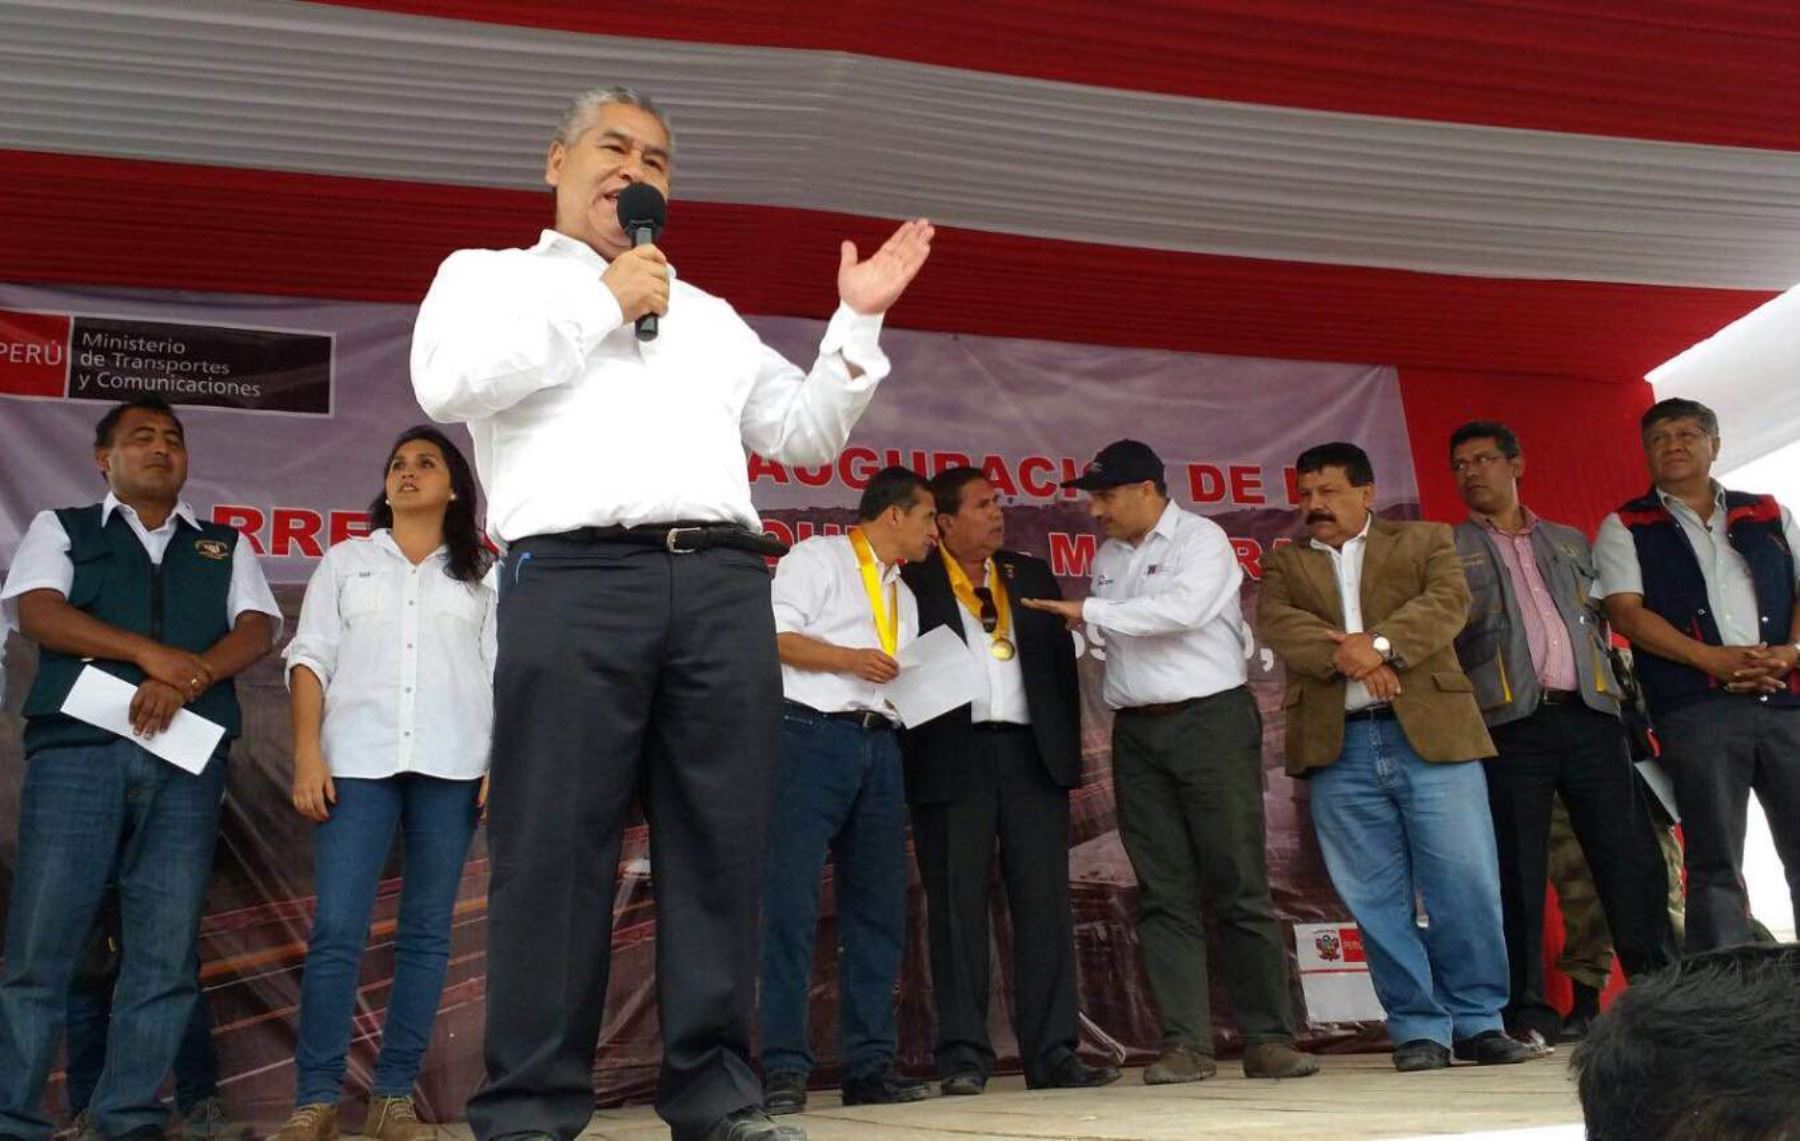 Viceministro de Transportes, Henrry Zaira, participó de ceremonia de inauguración de carretera Quilca-Matarani, en Arequipa.